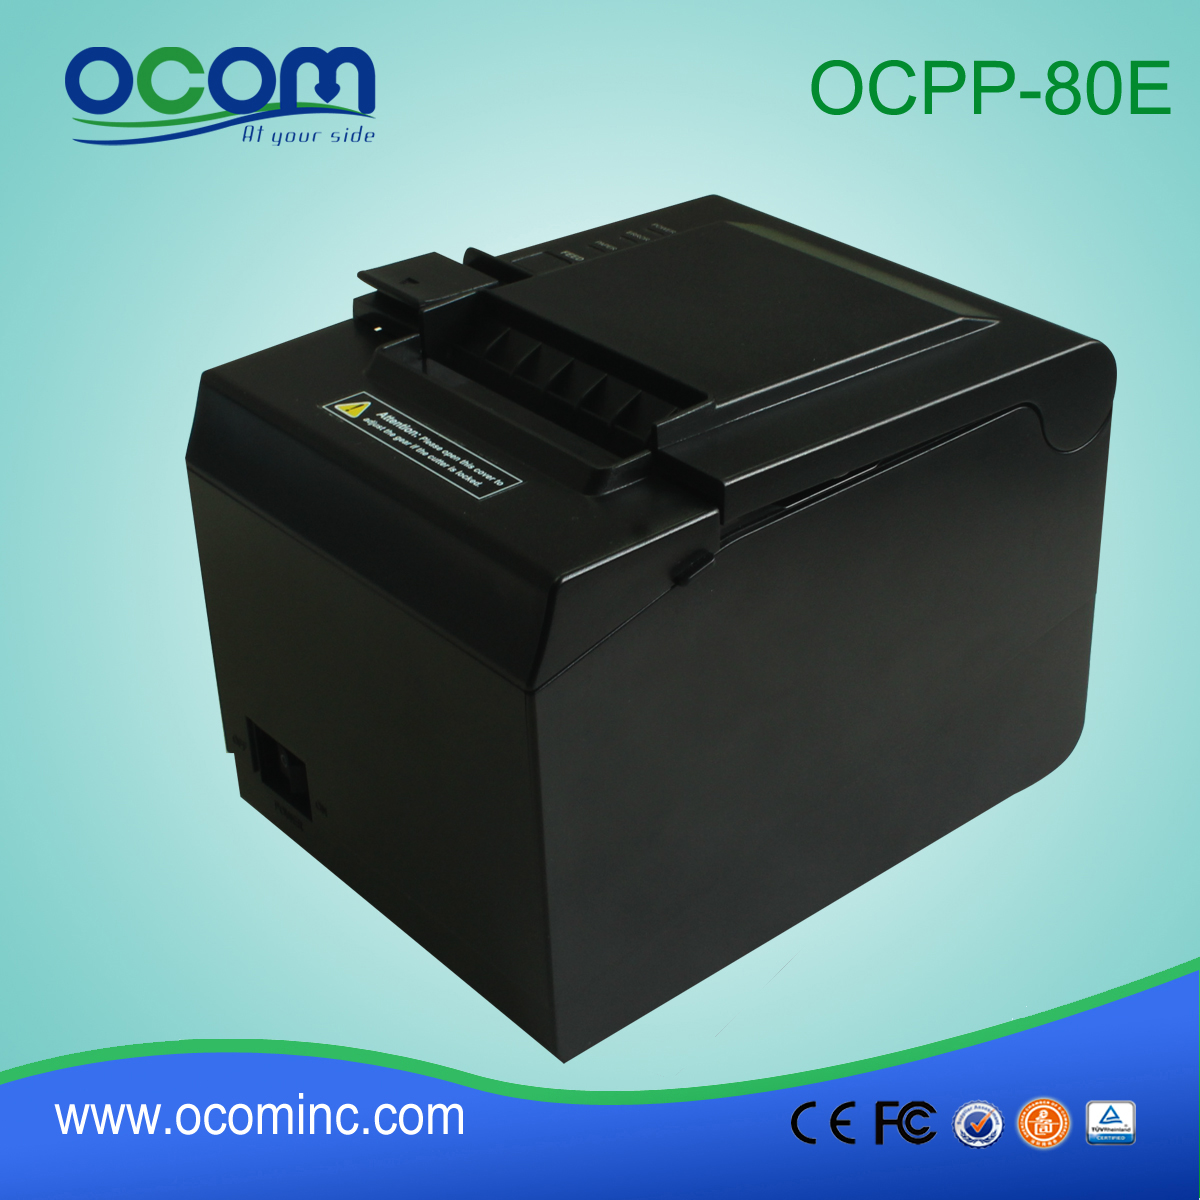 Σούπερ μάρκετ 80 χιλιοστά εκτυπωτή θερμικό χαρτί (OCPP-80E)